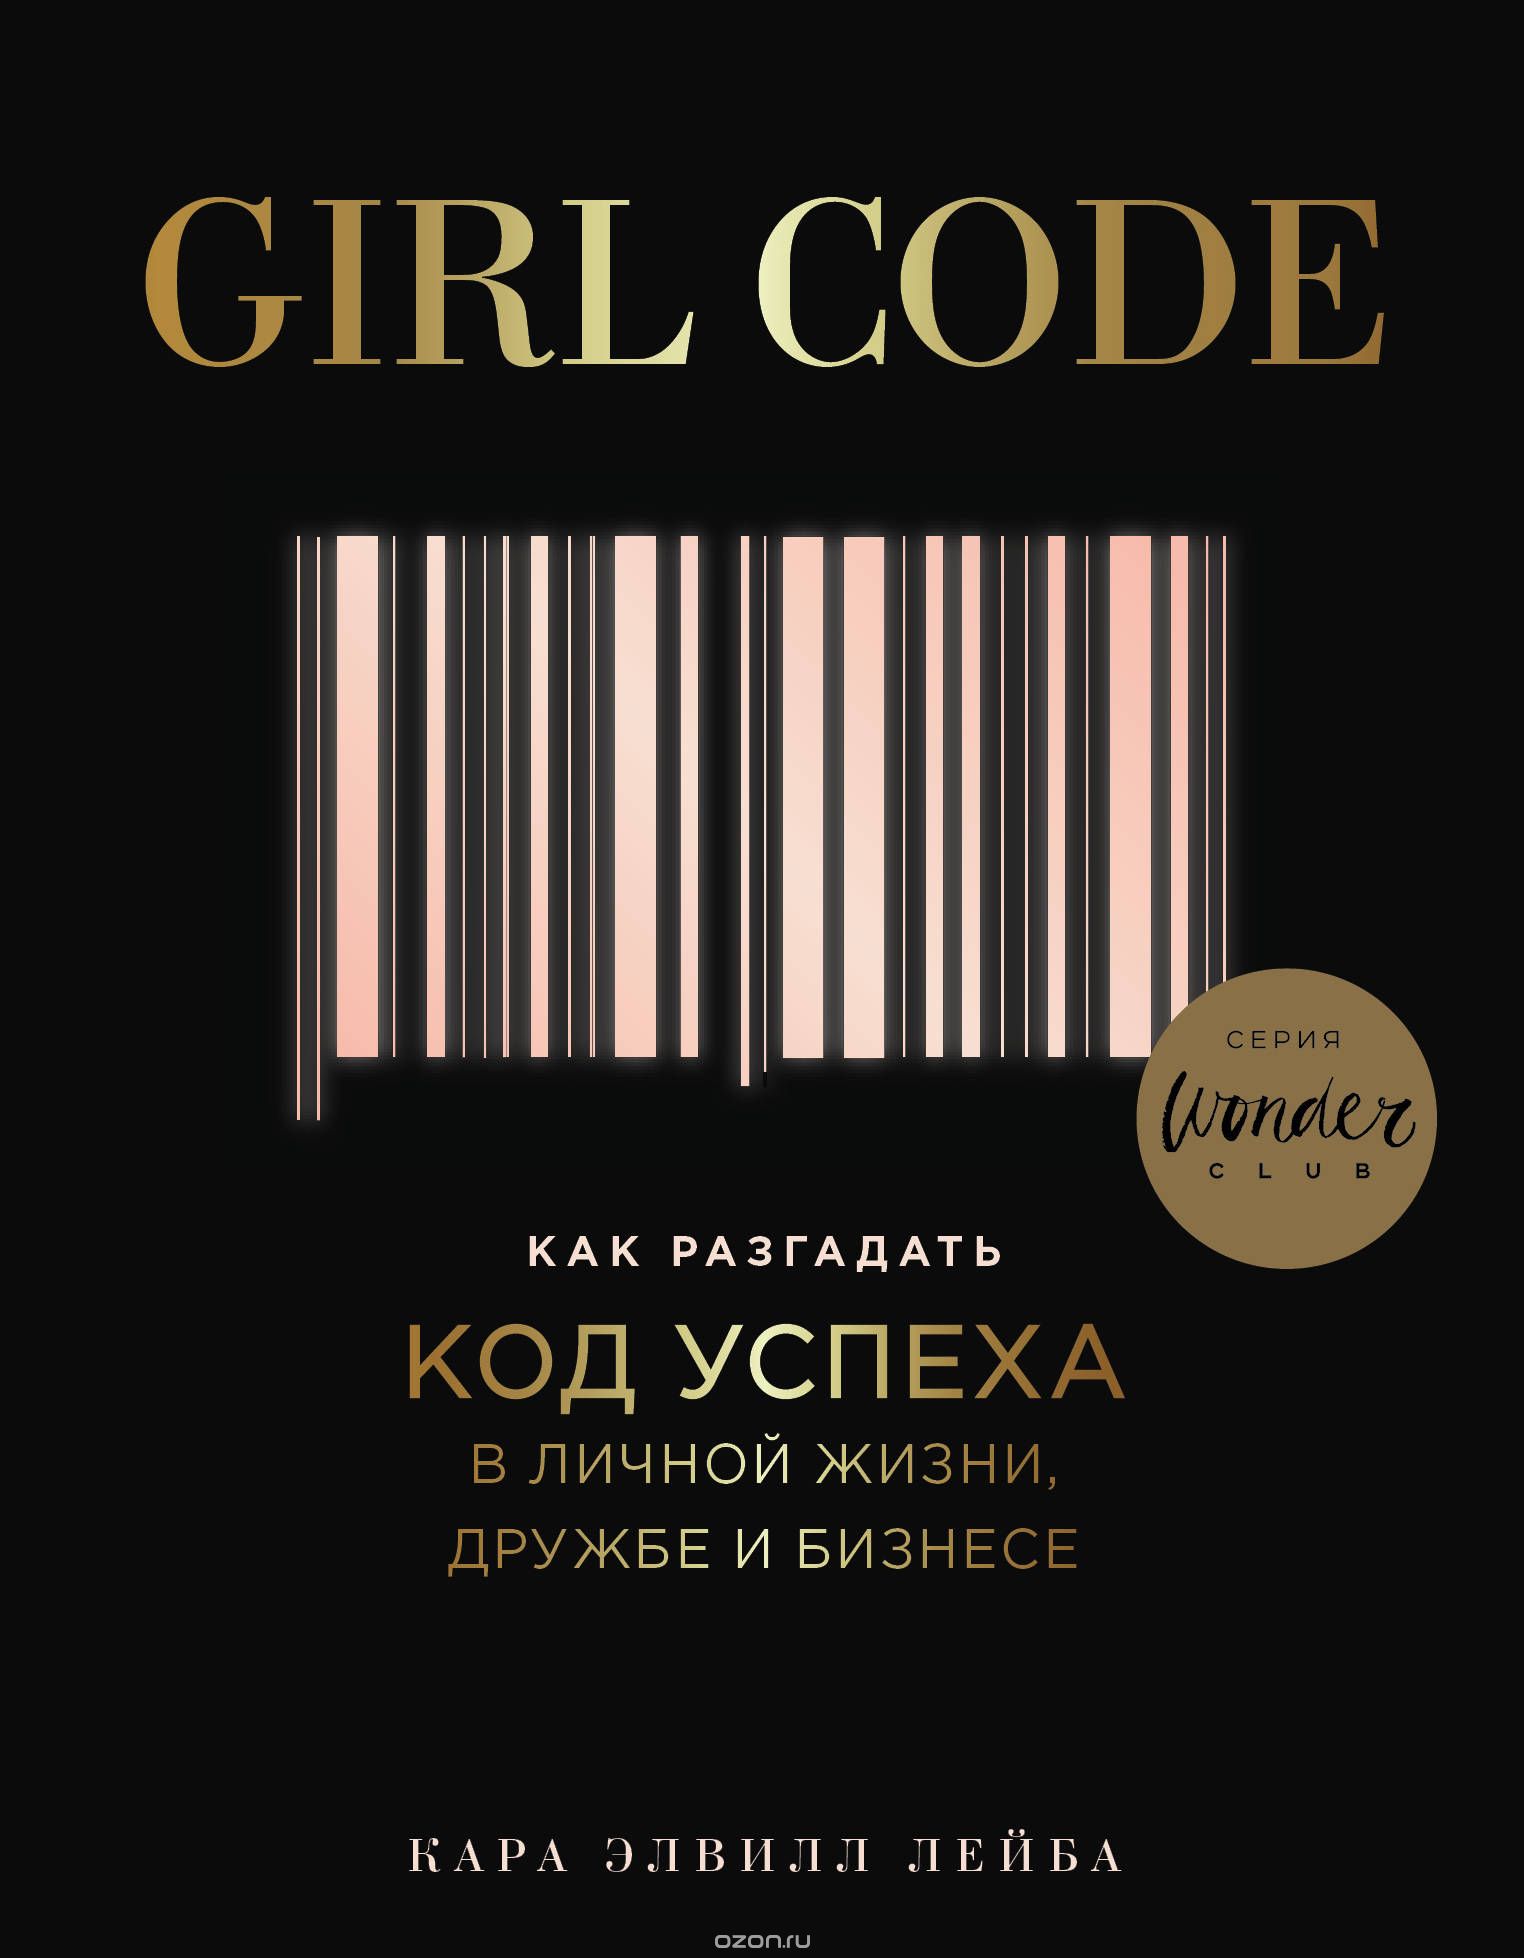 Girl Code.        ,    